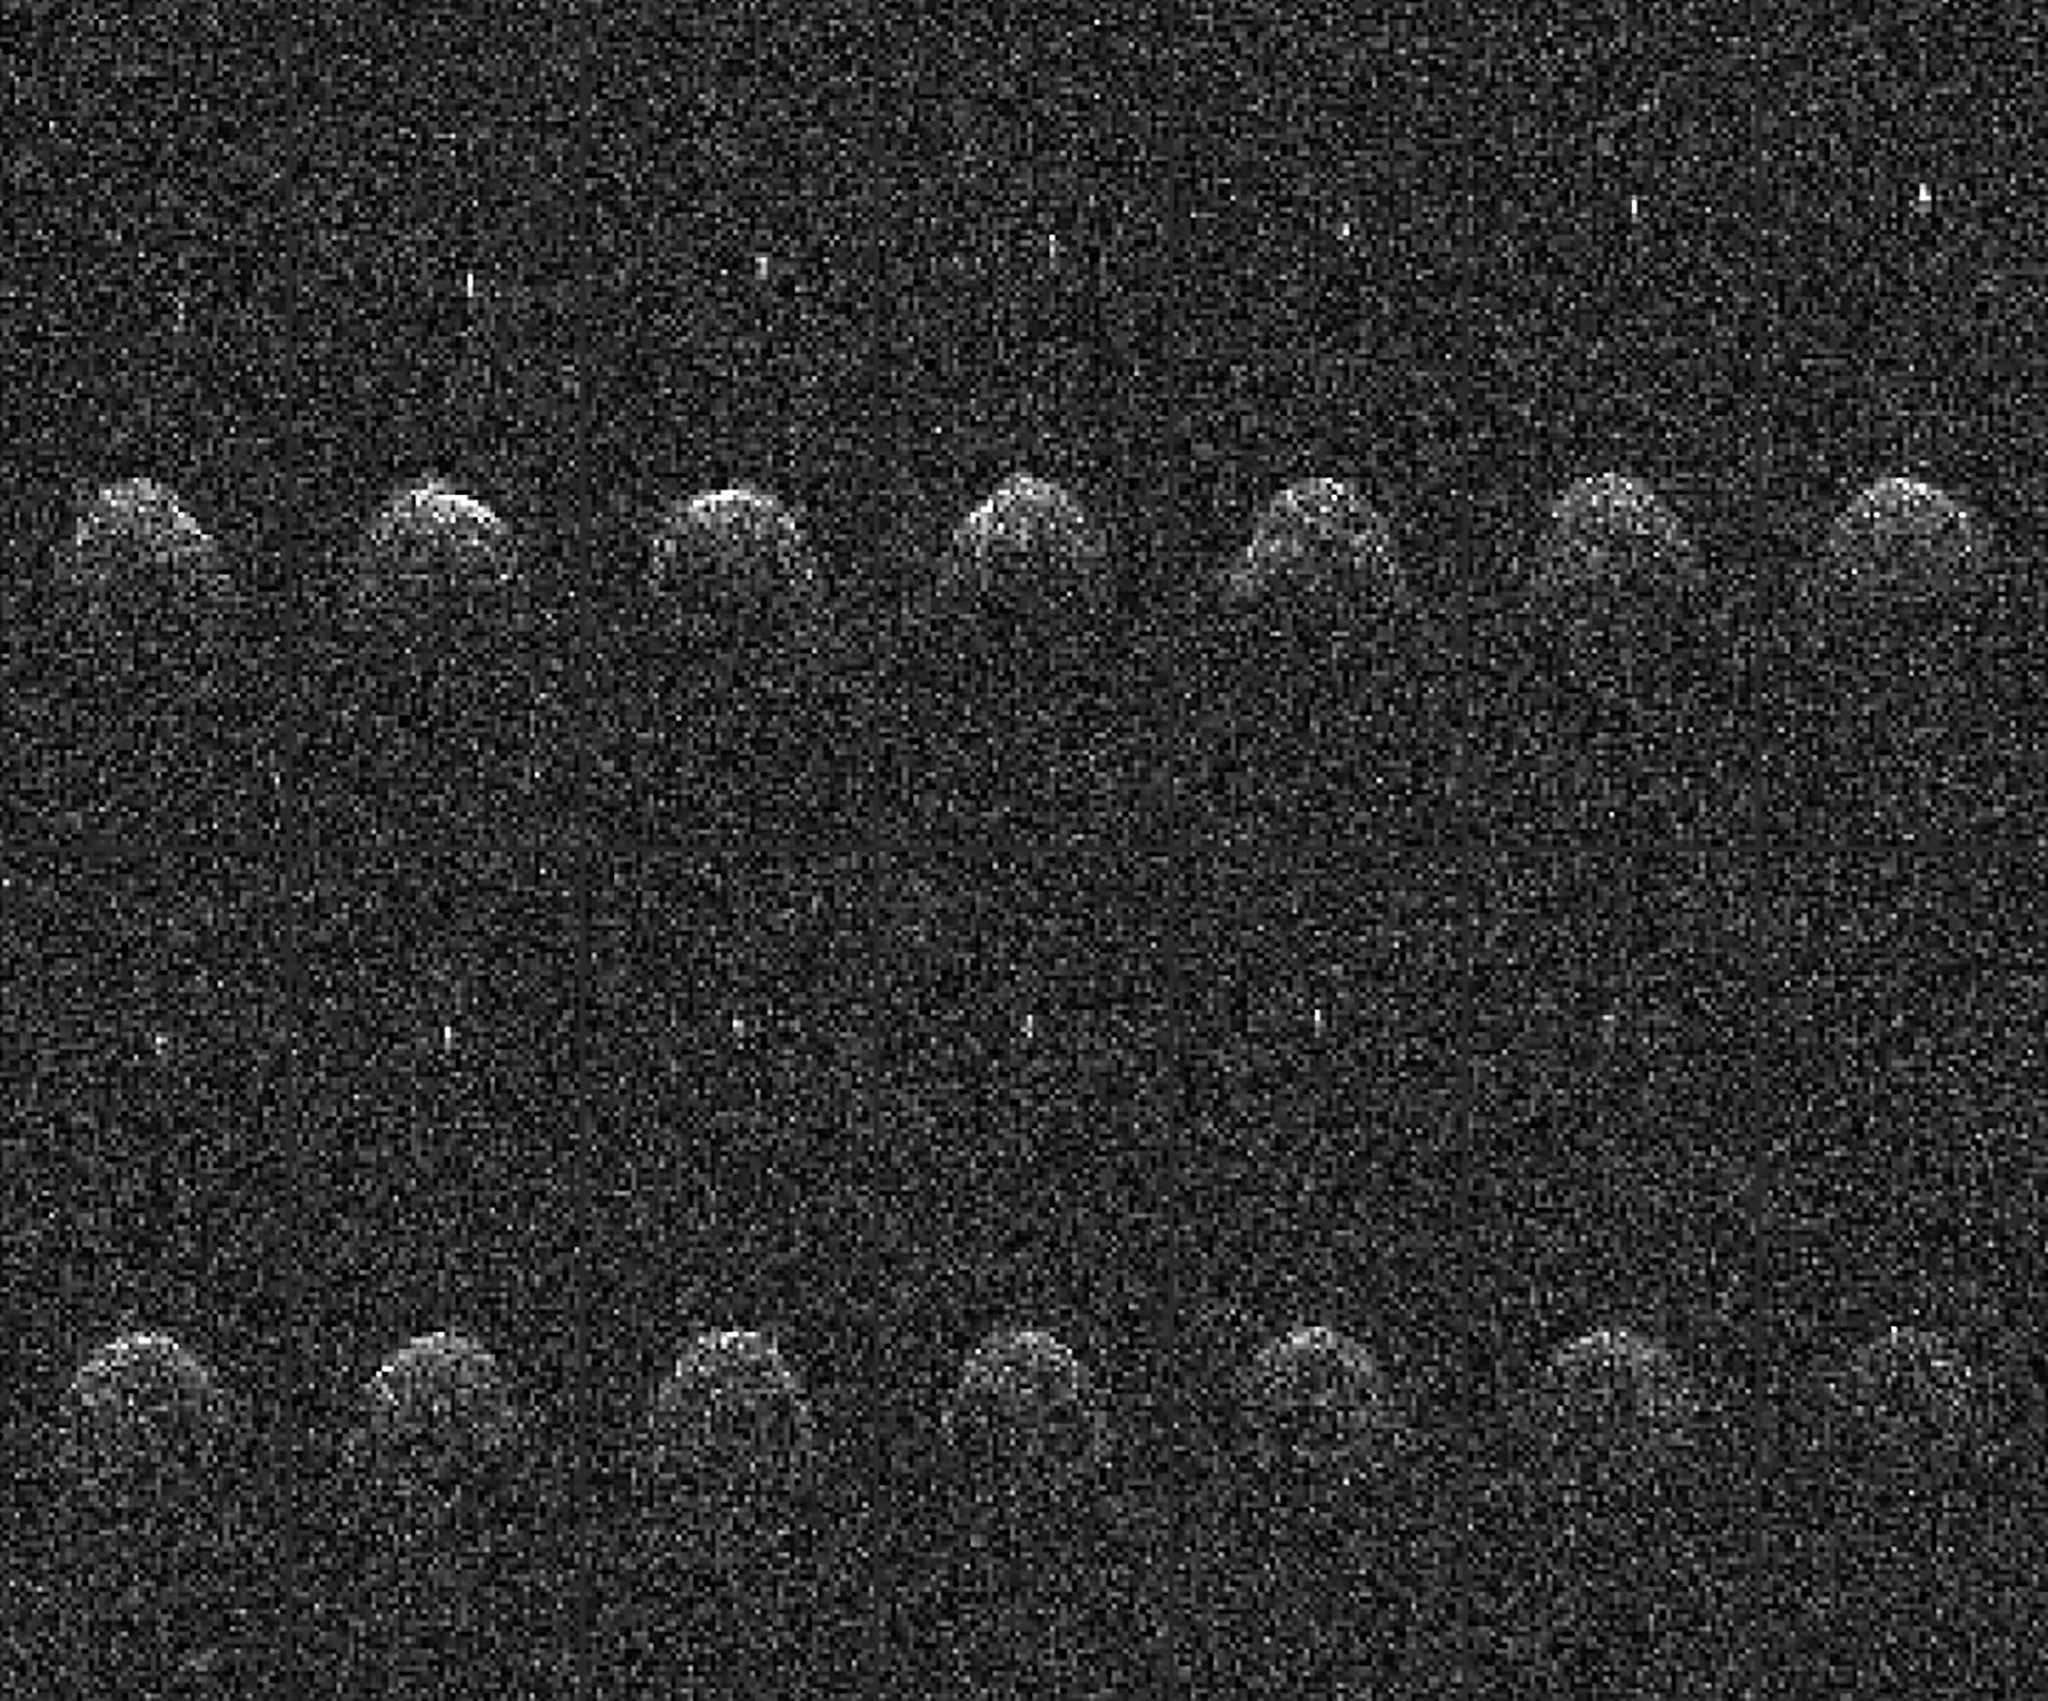 Проект DART: NASA испытает таран для отклонения опасных астероидов